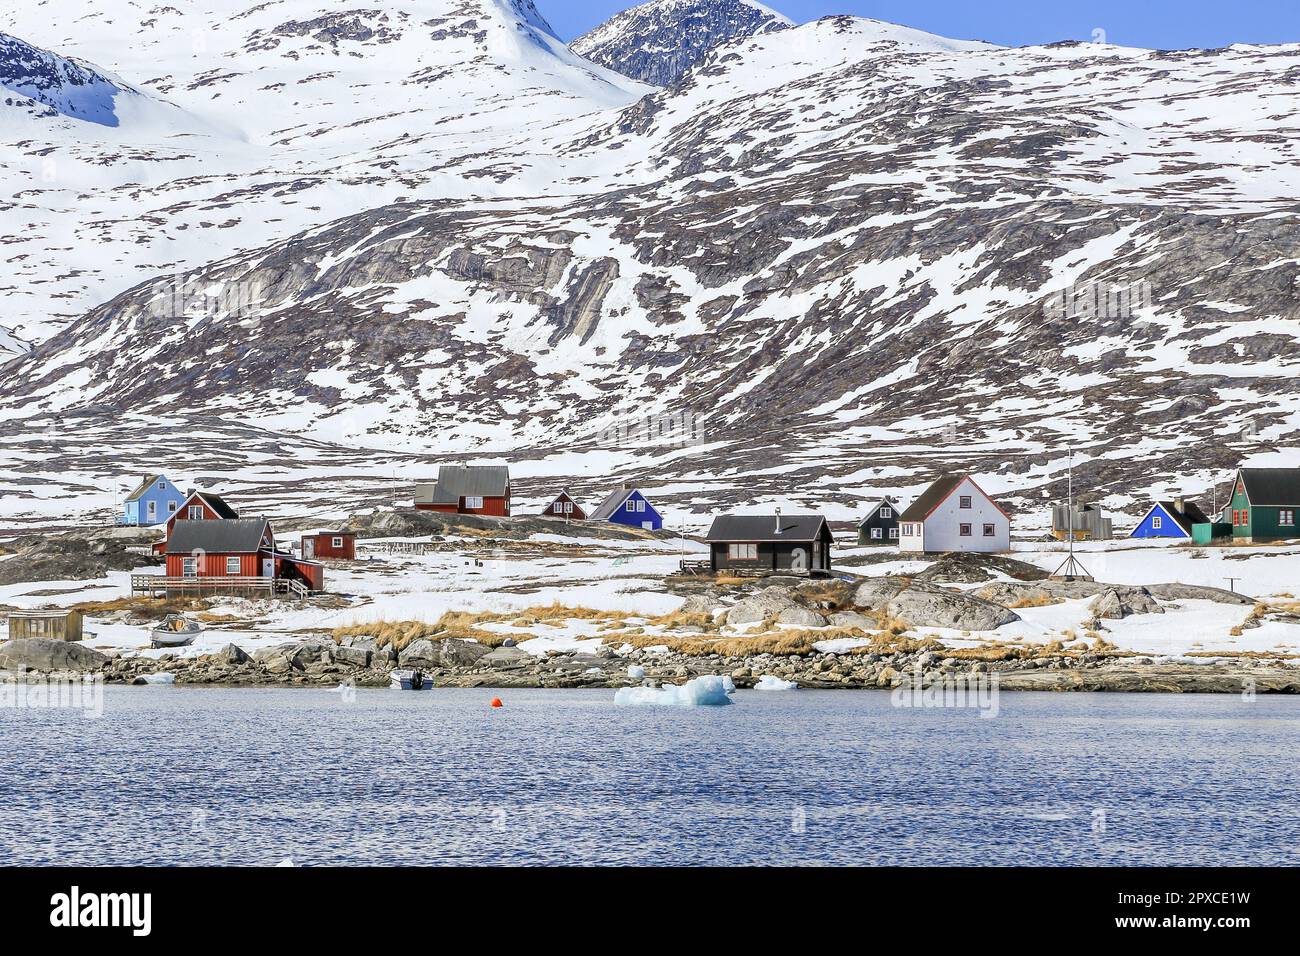 Qoornoq ancien village de pêcheurs, avec des chalets de résidence d'été inuits au milieu du fjord de Nuuk Banque D'Images